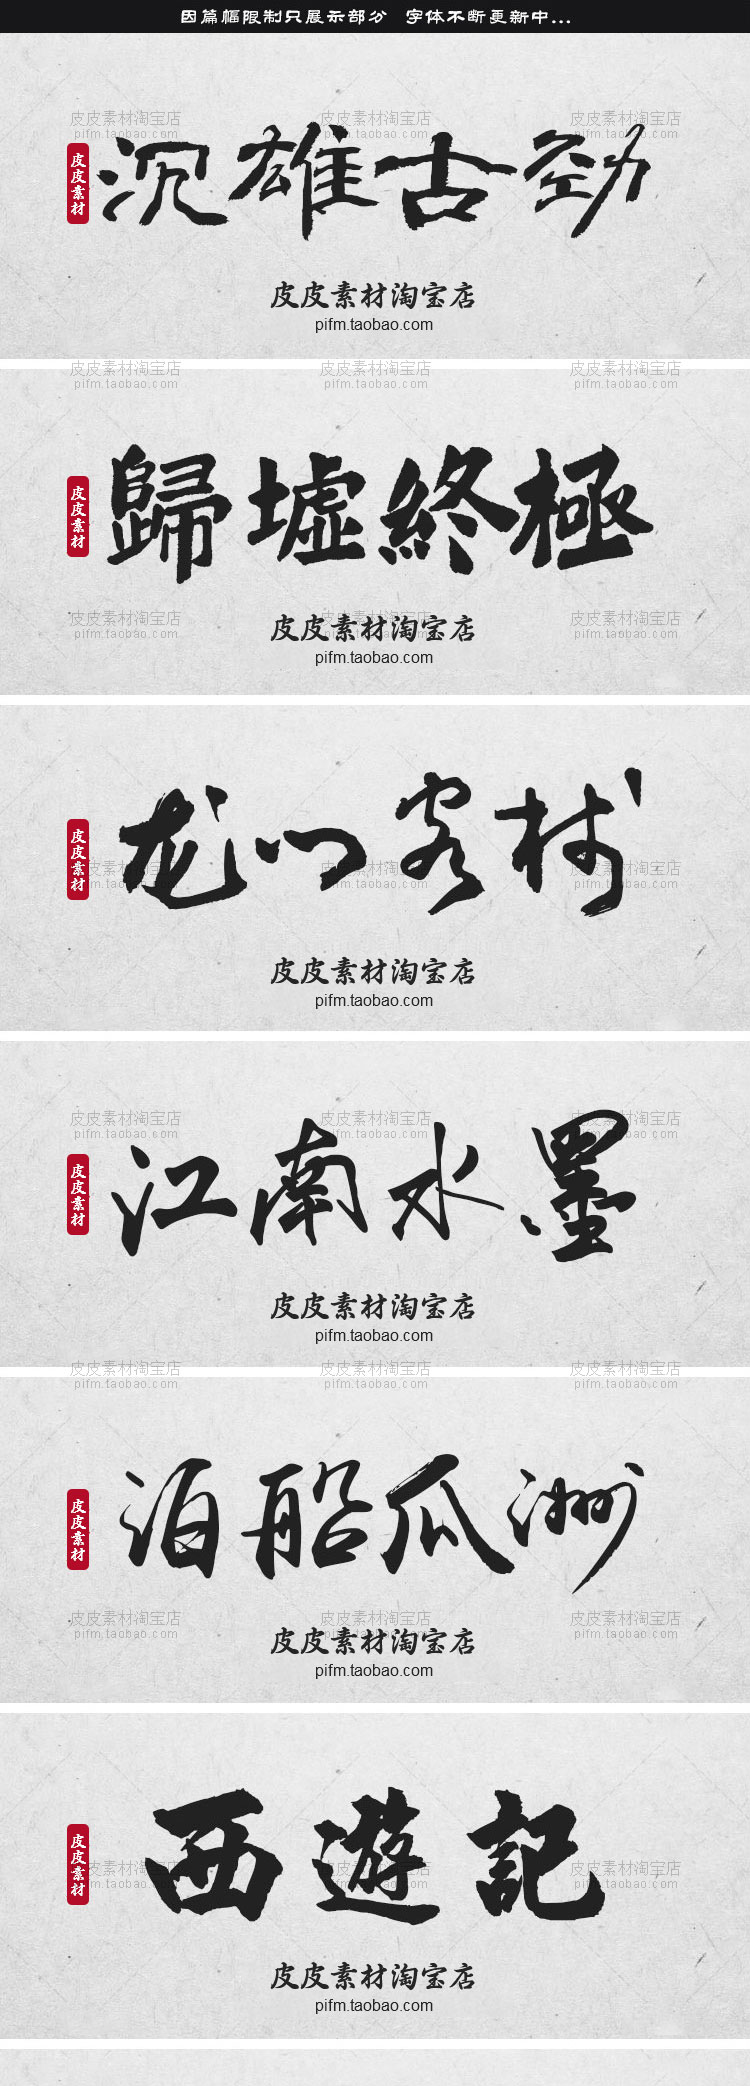 【古风毛笔】PS古风毛笔书法字体包大全ai中文中式广告行书设计素材库下载mac